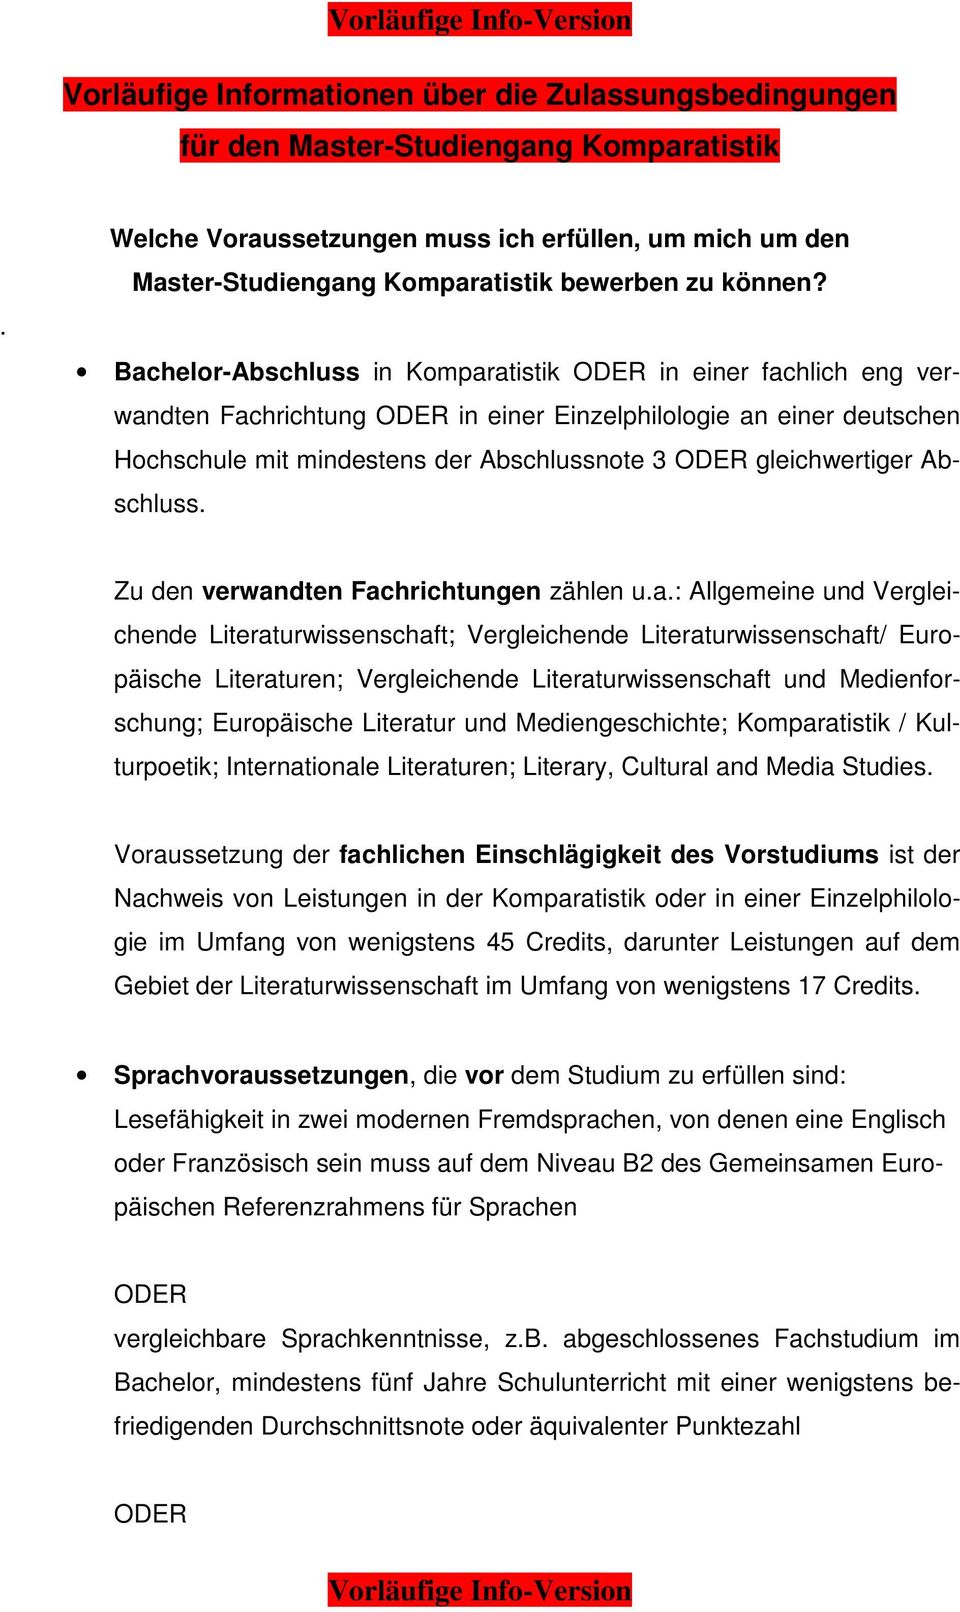 Bachelor-Abschluss in Komparatistik ODER in einer fachlich eng verwandten Fachrichtung ODER in einer Einzelphilologie an einer deutschen Hochschule mit mindestens der Abschlussnote 3 ODER